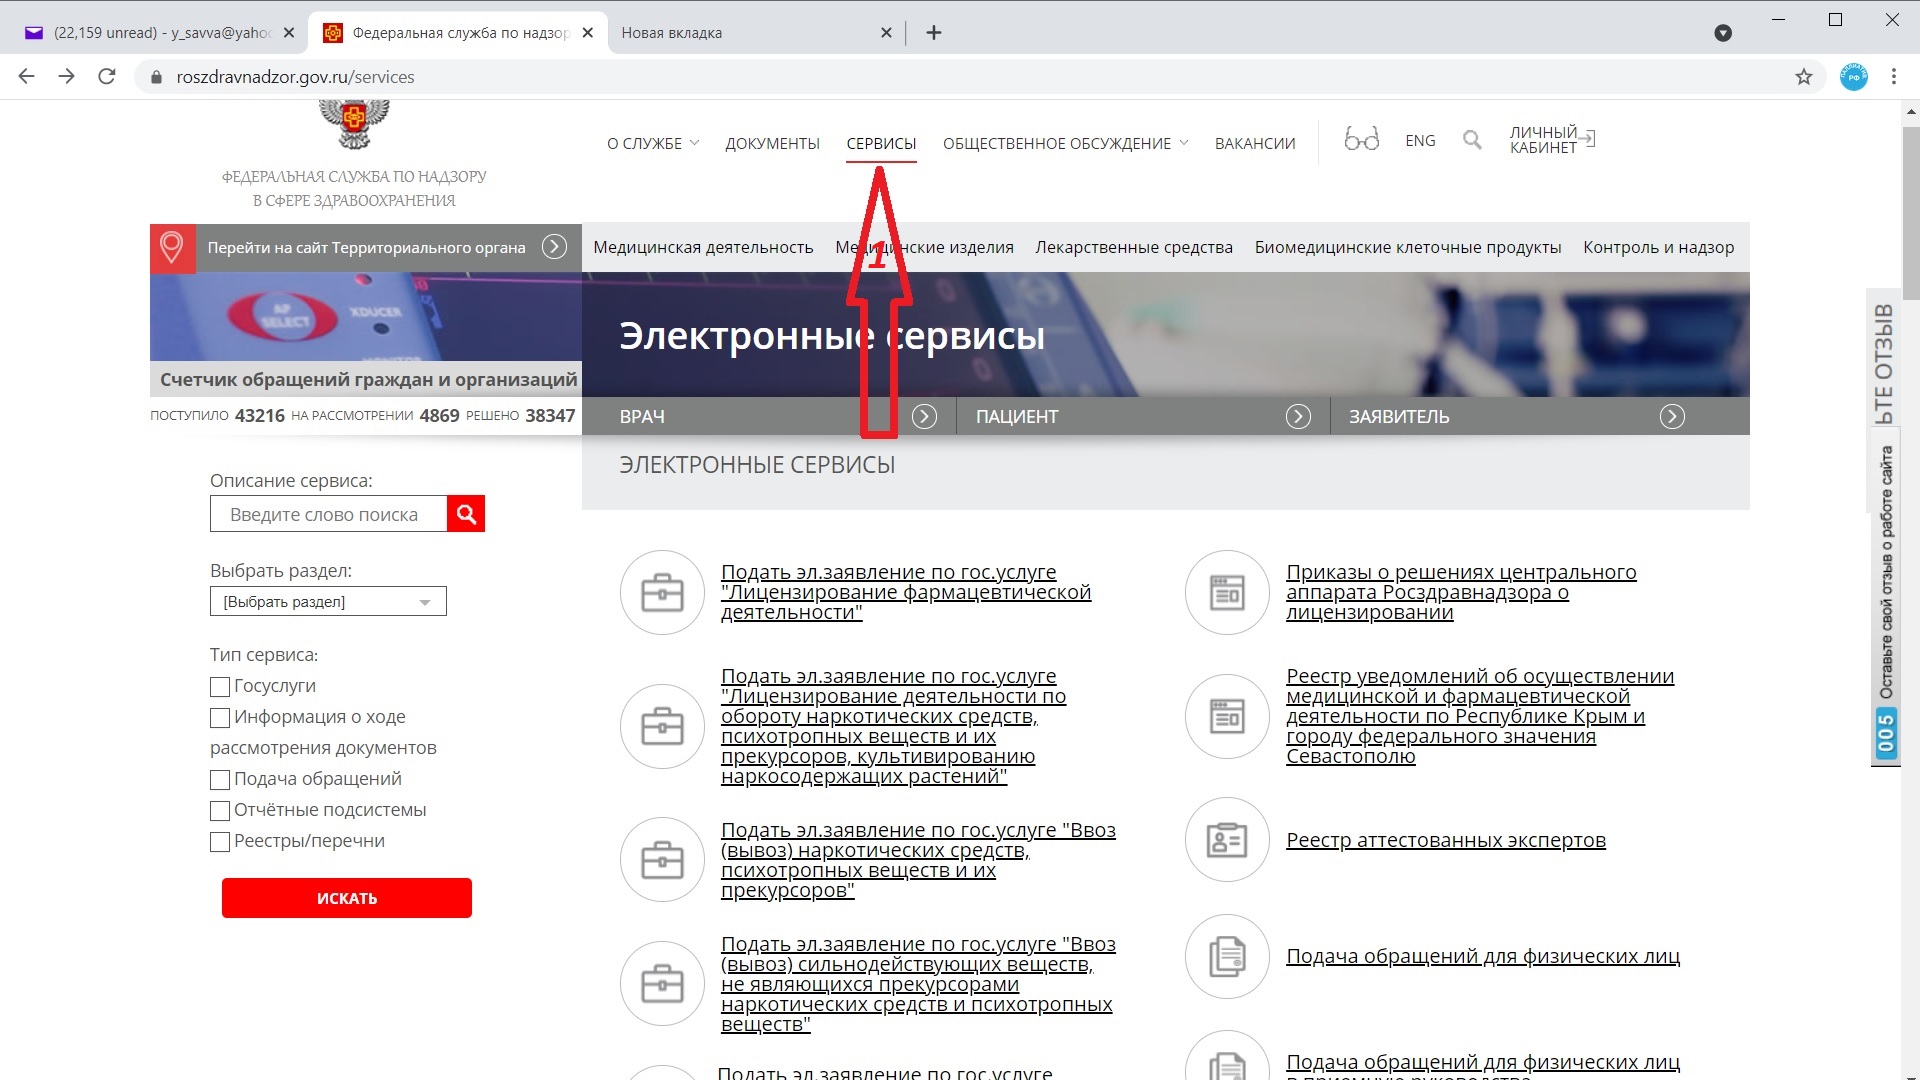 Сайт roszdravnadzor gov ru. Код медицинского изделия. Номенклатурная классификация медицинских изделий по видам.